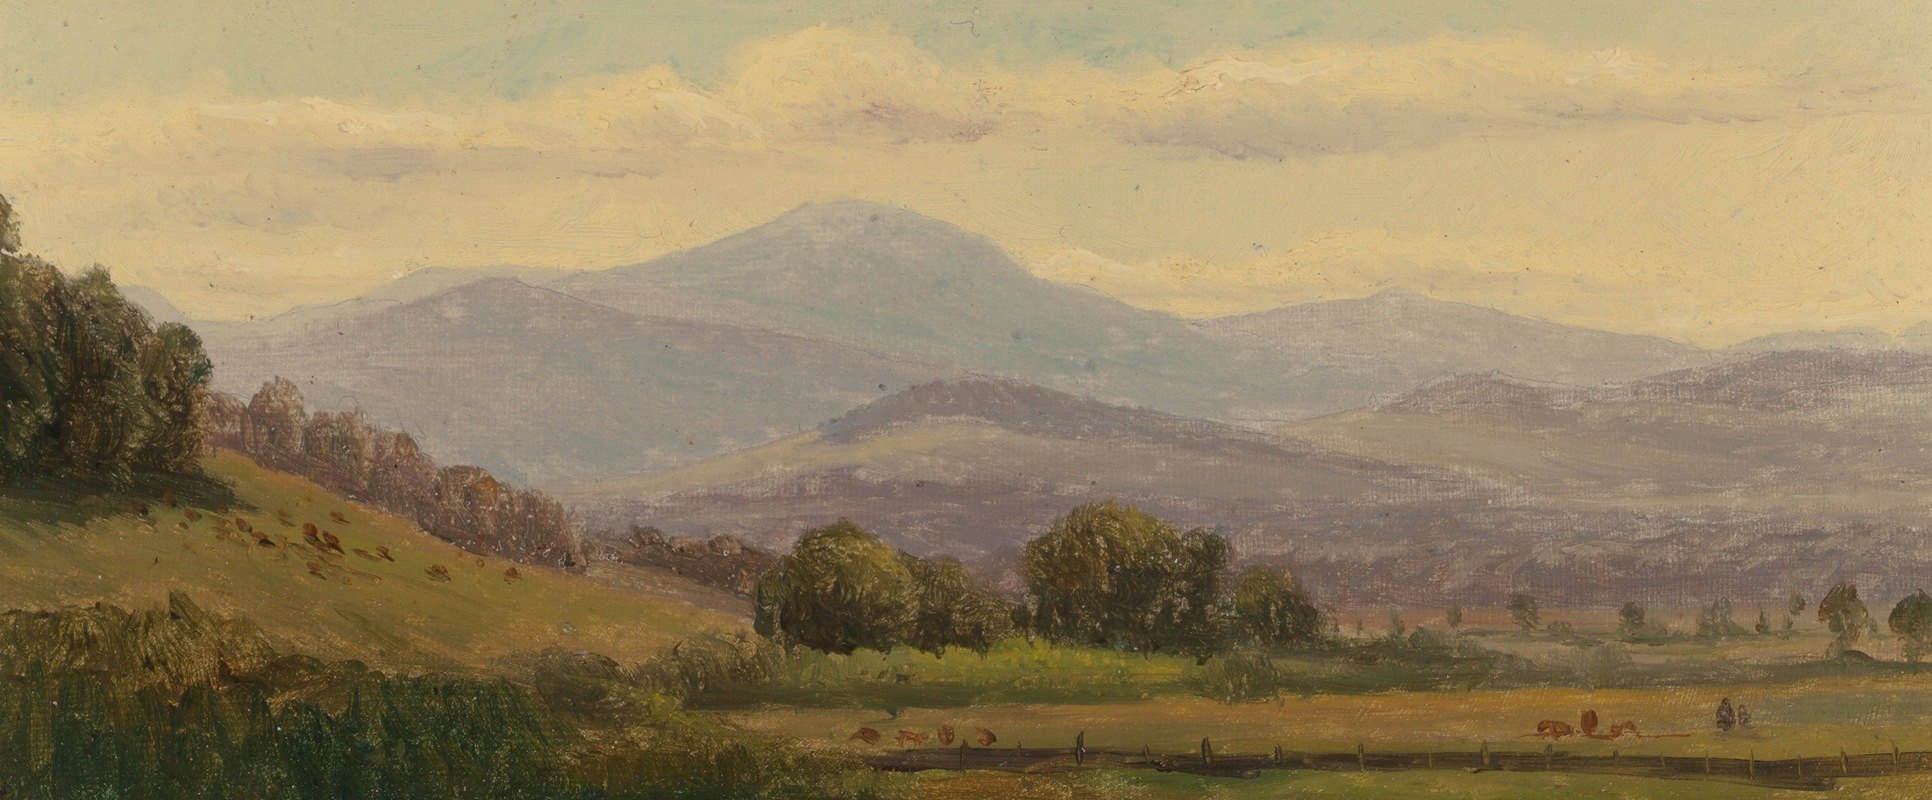 华盛顿山`Mt. Washington (19th Century) by American School